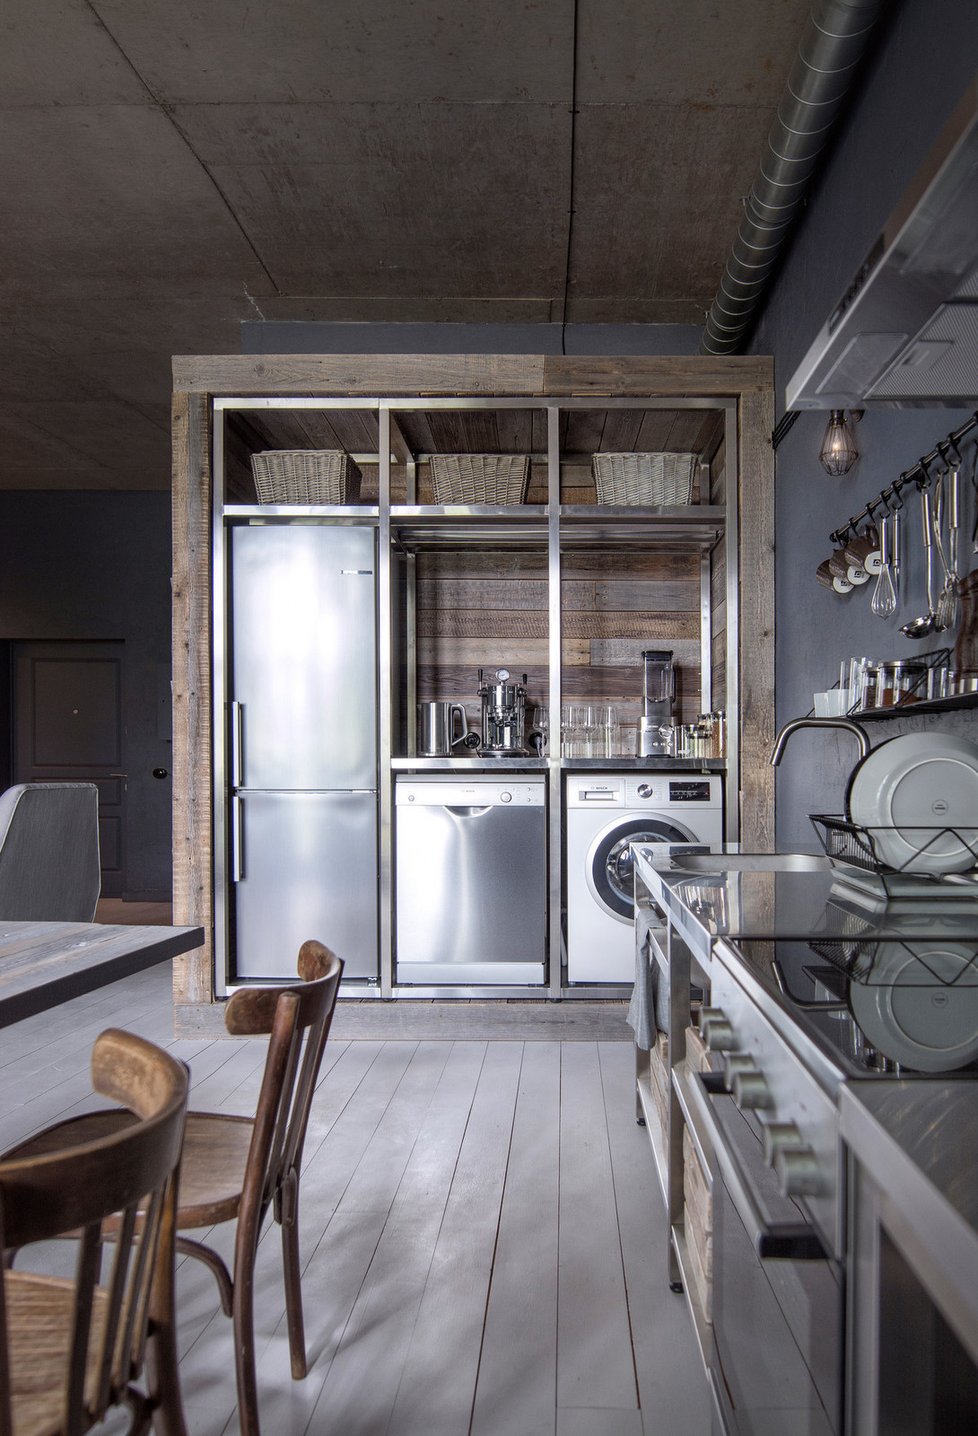 Na dřevěný modul, do nějž architekti umístili koupelnu, navazuje nika s kuchyňským regálem. Vznikl tak prostor pro nejnutnější spotřebiče.